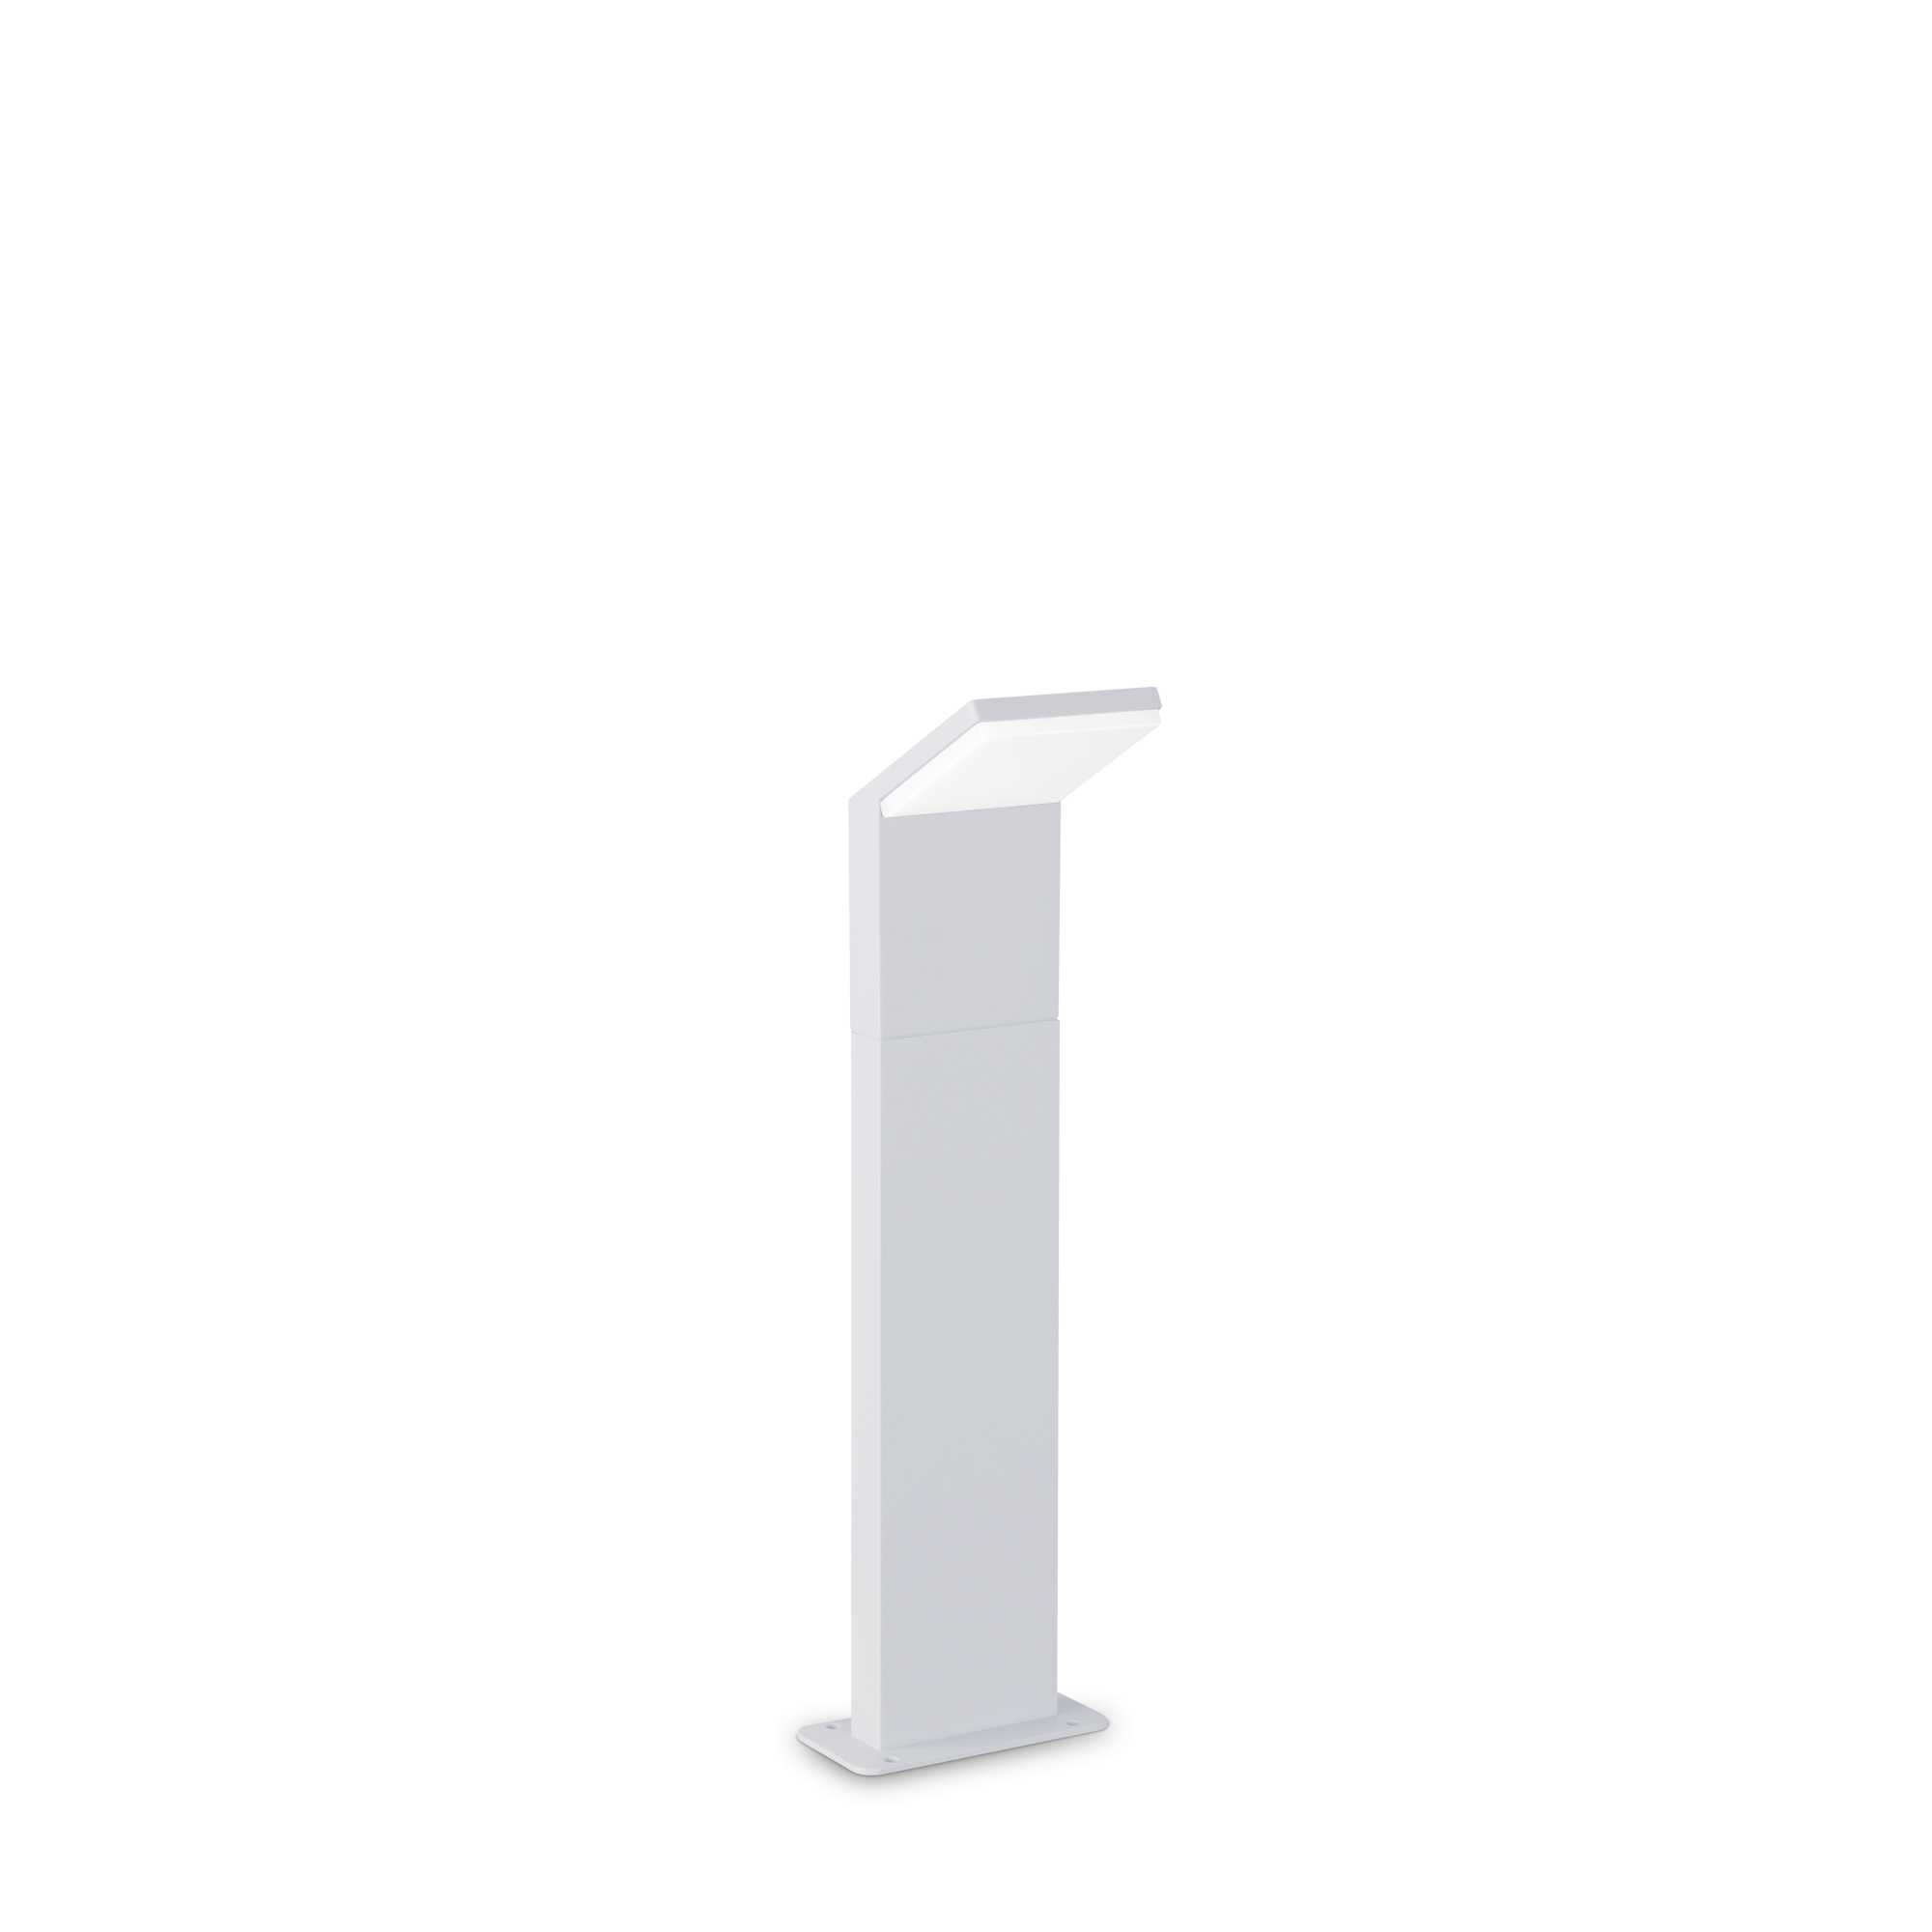 AD hotelska oprema Vanjska podna lampa Style pt h050 (3000k)- Bijele boje slika proizvoda